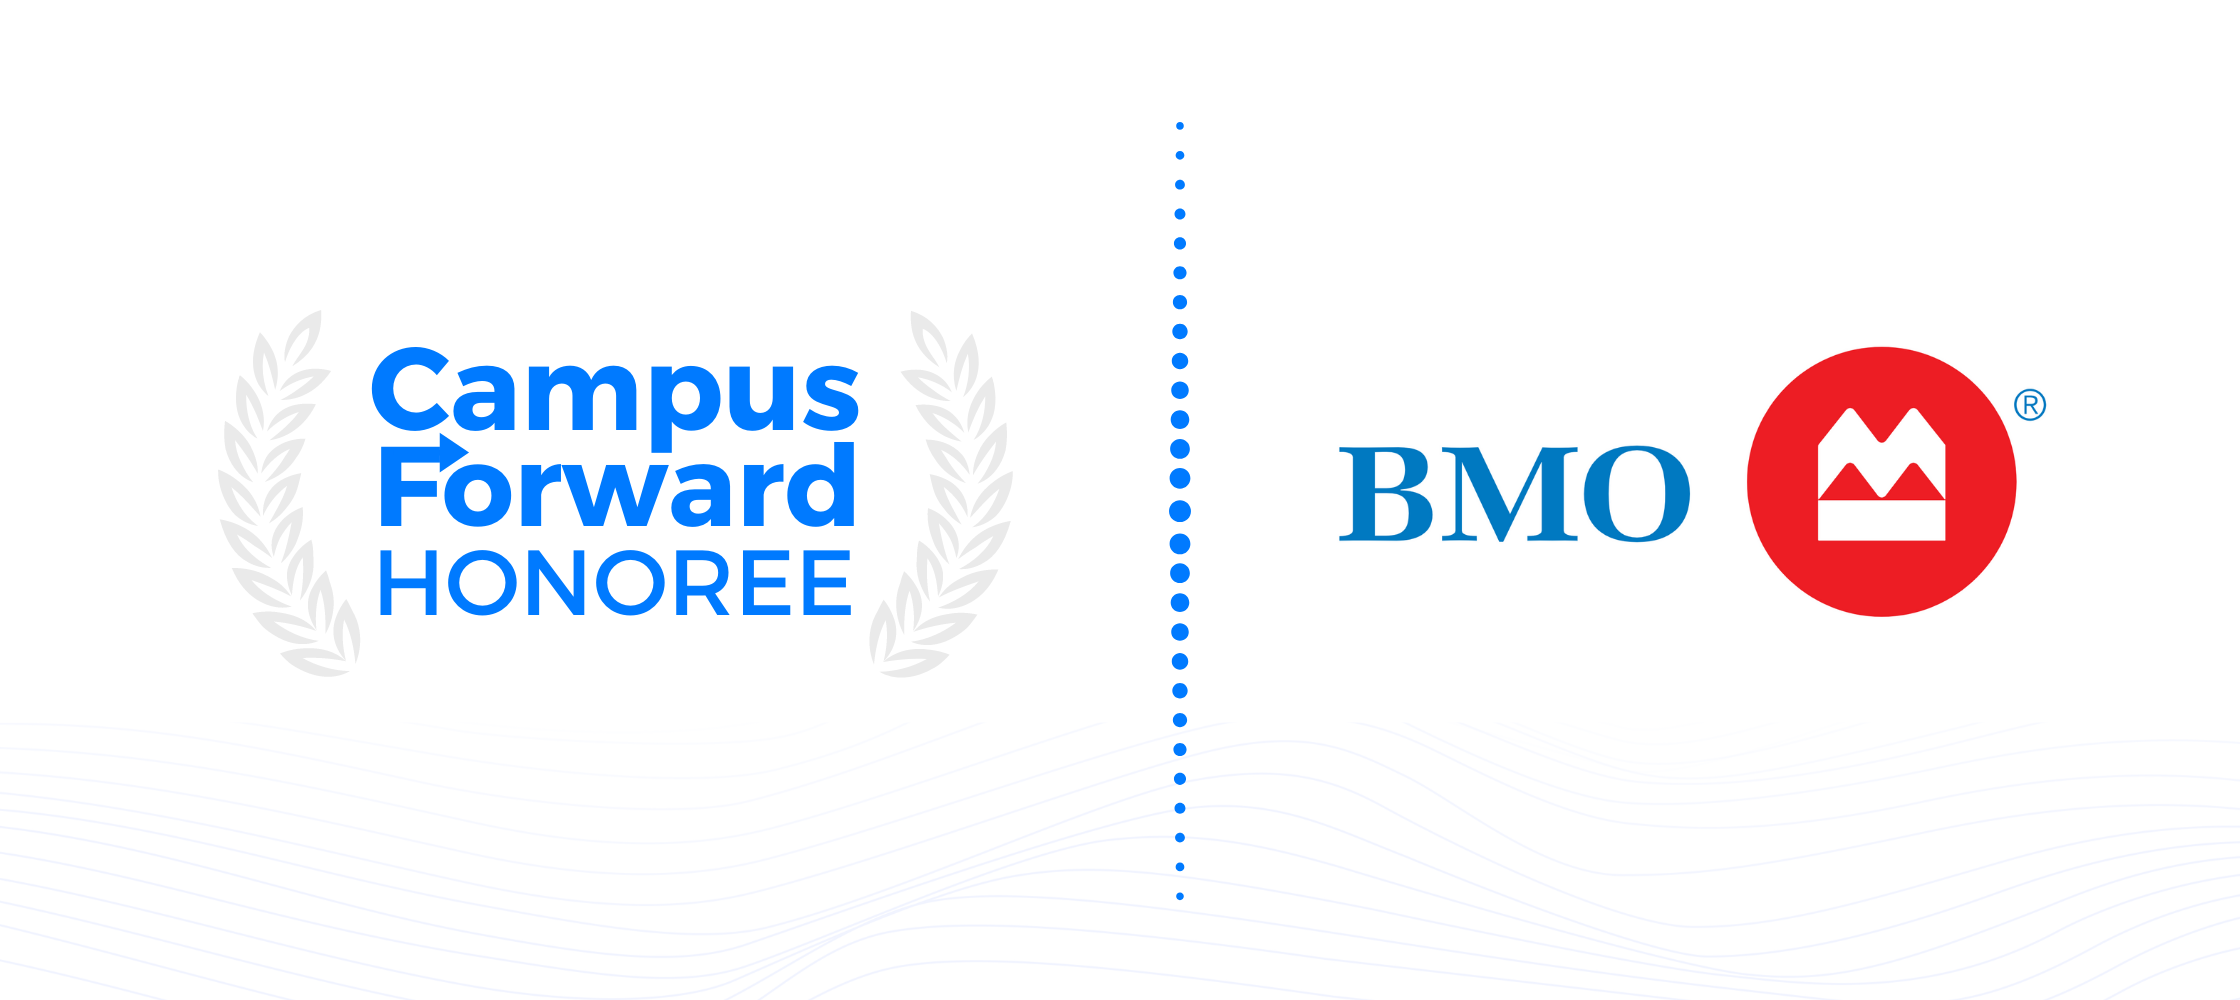 Campus Forward Honoree - BMO